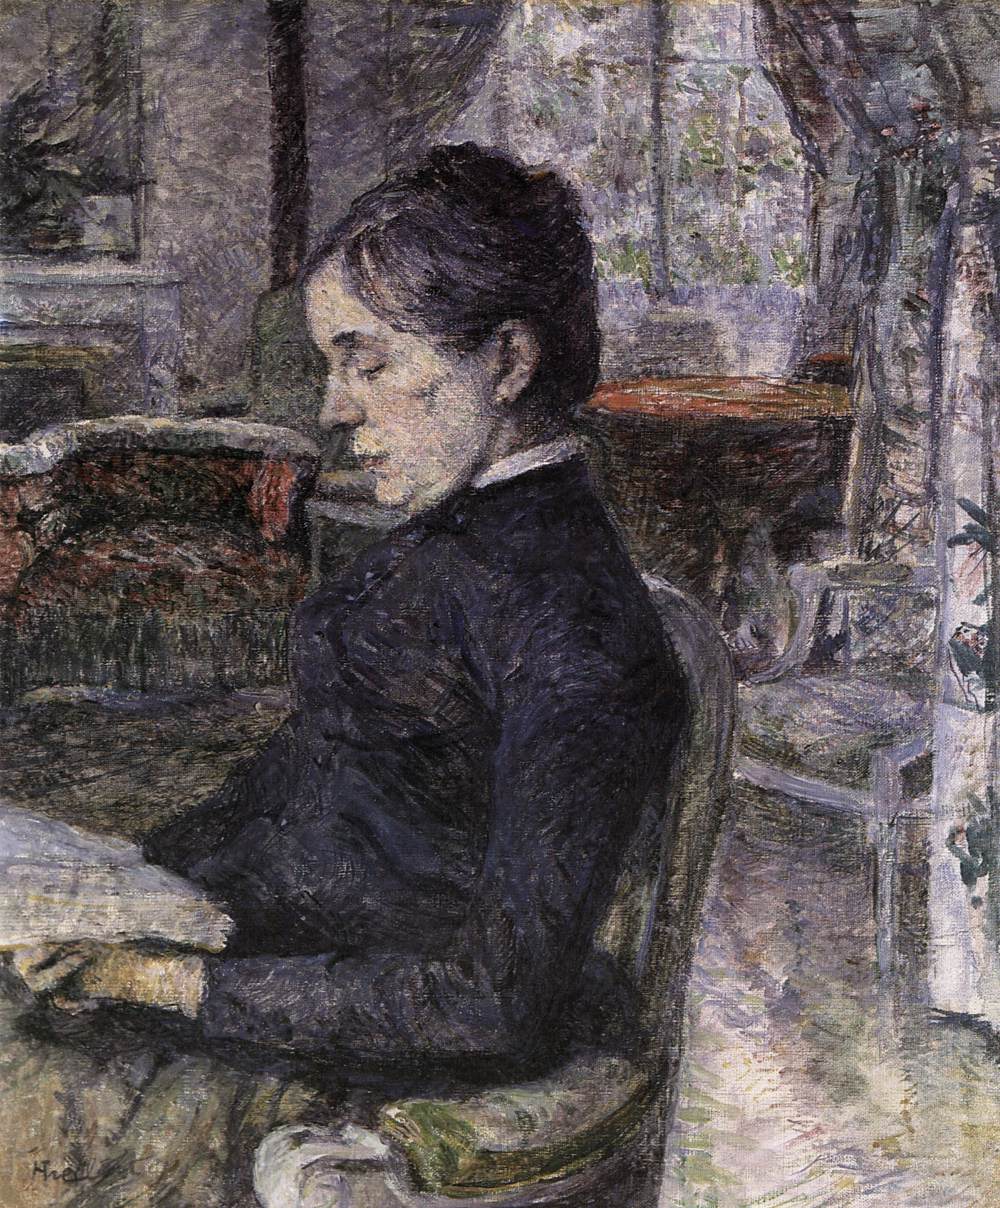 Contessa Adèle de Tolosa-Lautrec nella Malrome Château Hall